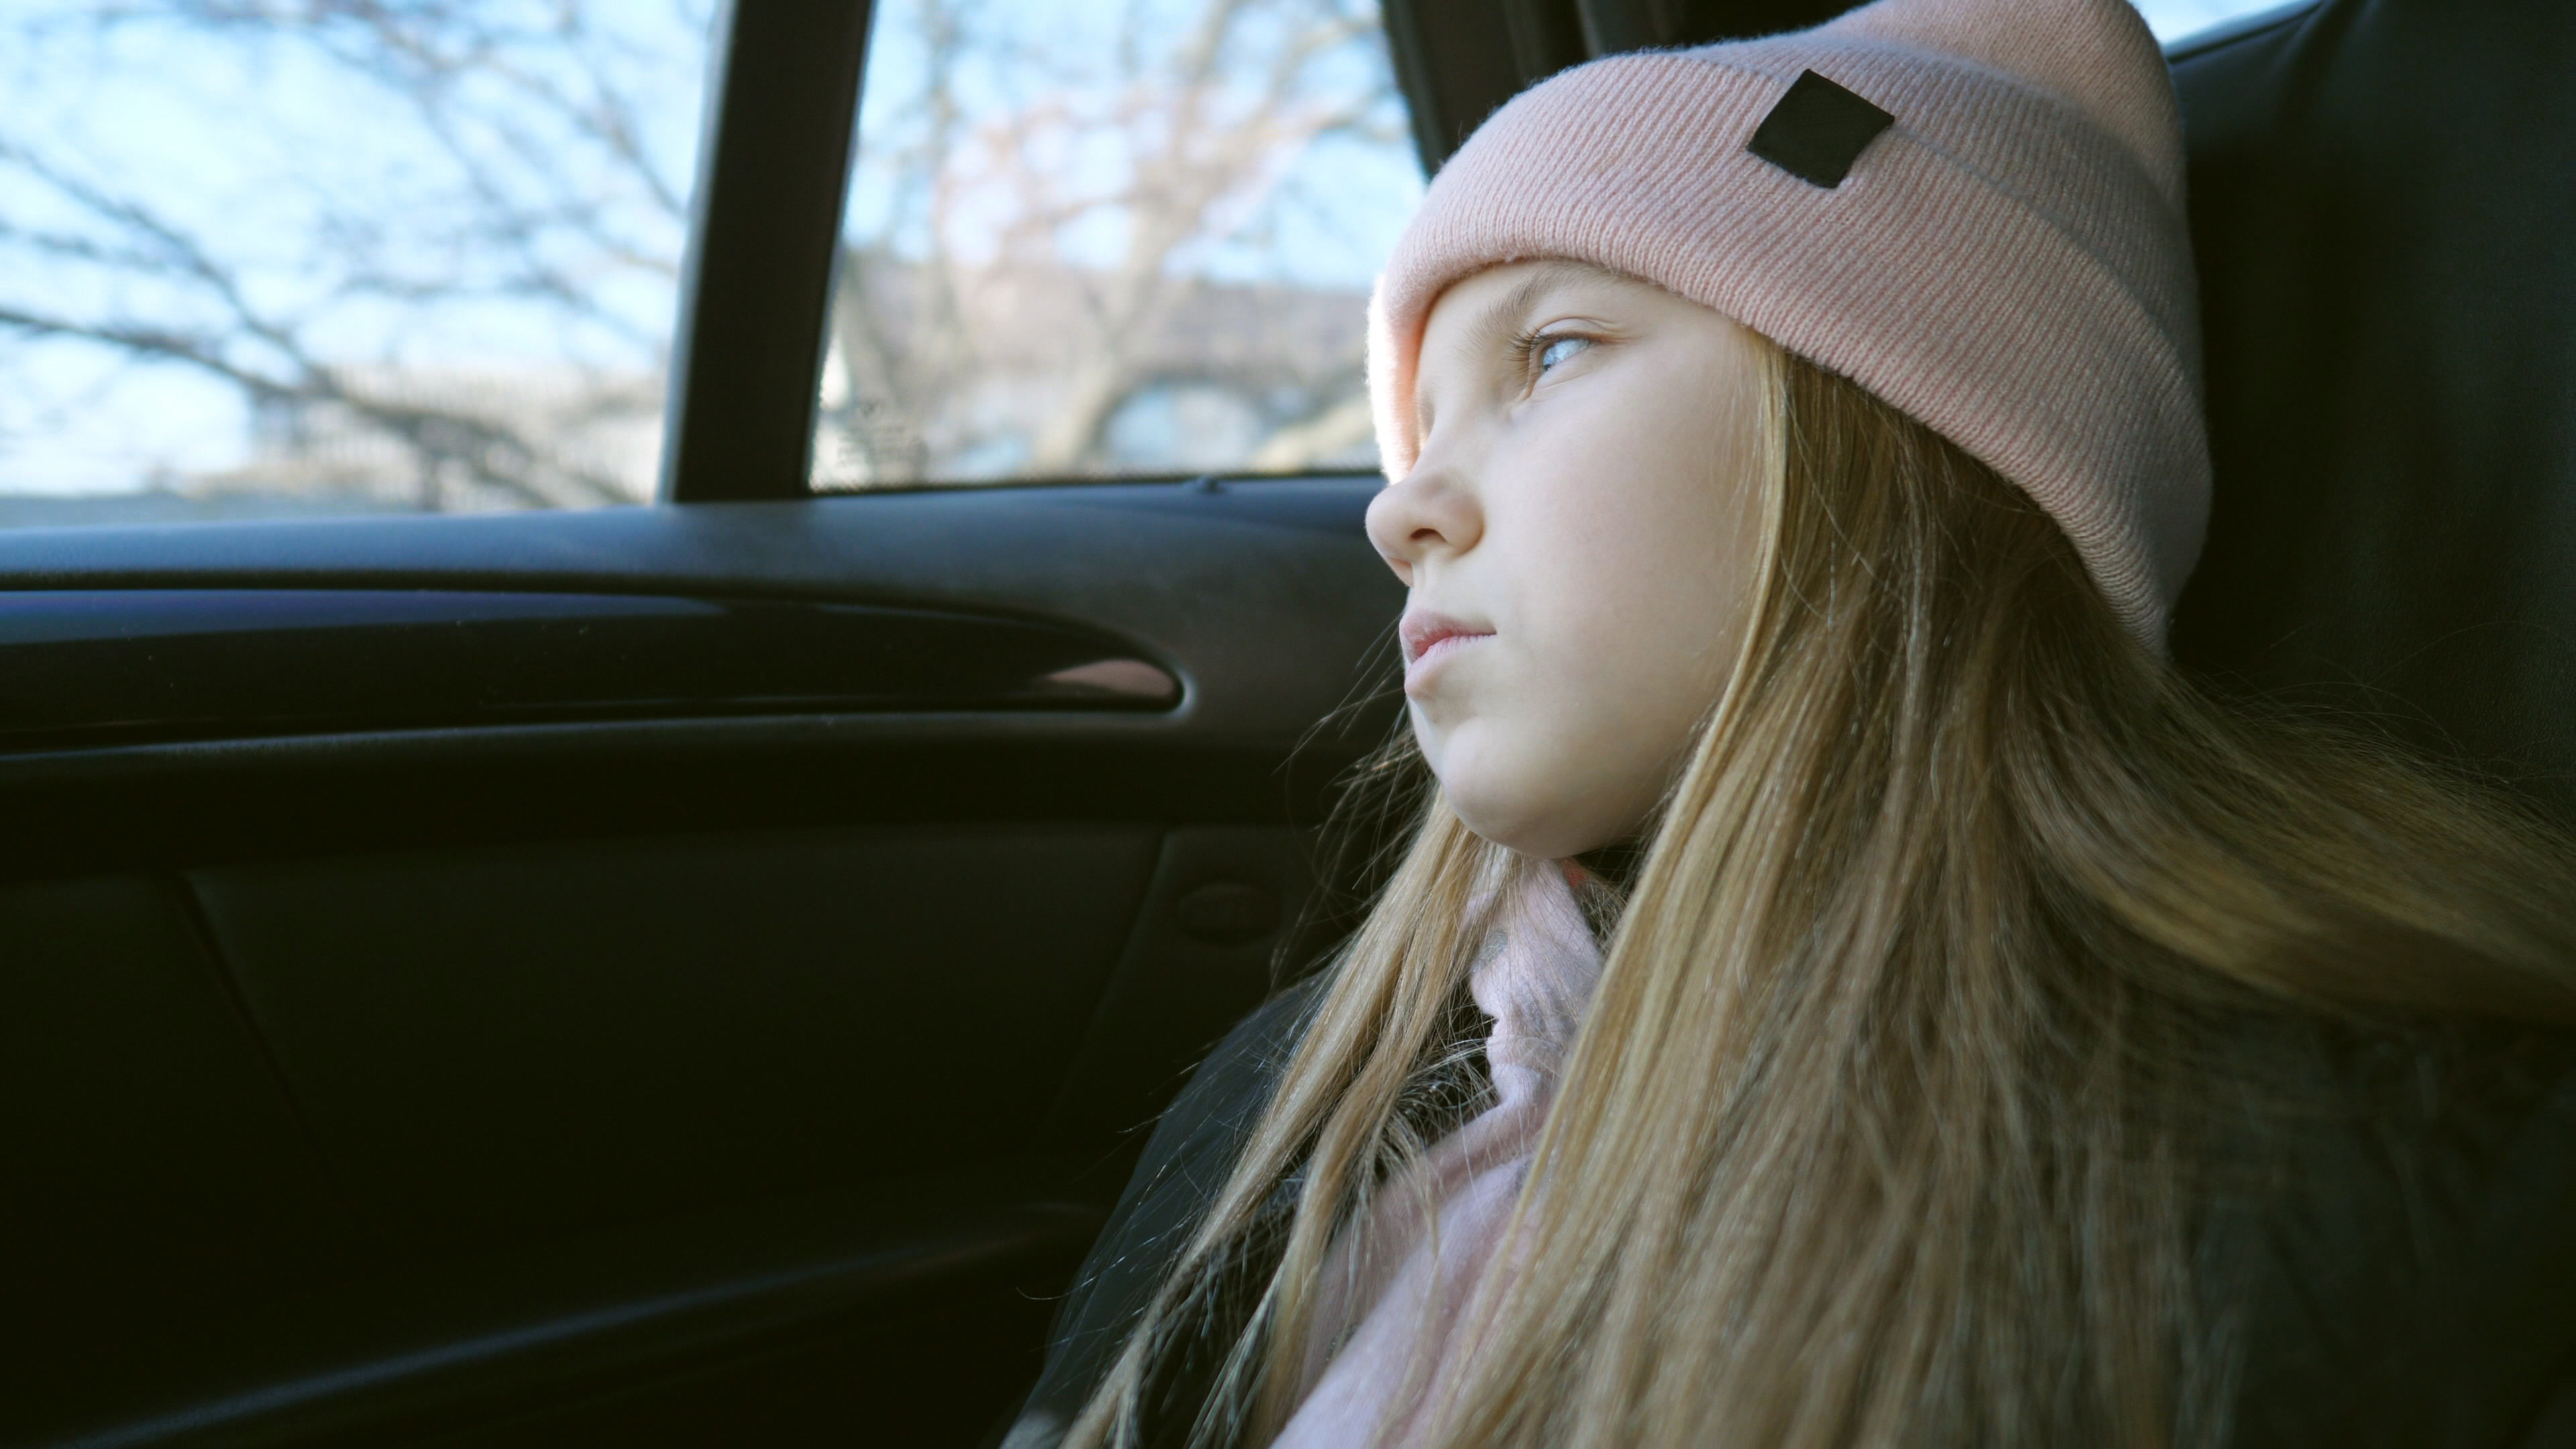 Hermosa chica de pelo largo y rubio mira al exterior a través de la ventanilla en el asiento trasero de un Automóvil en marcha | Fuente: Shutterstock.com